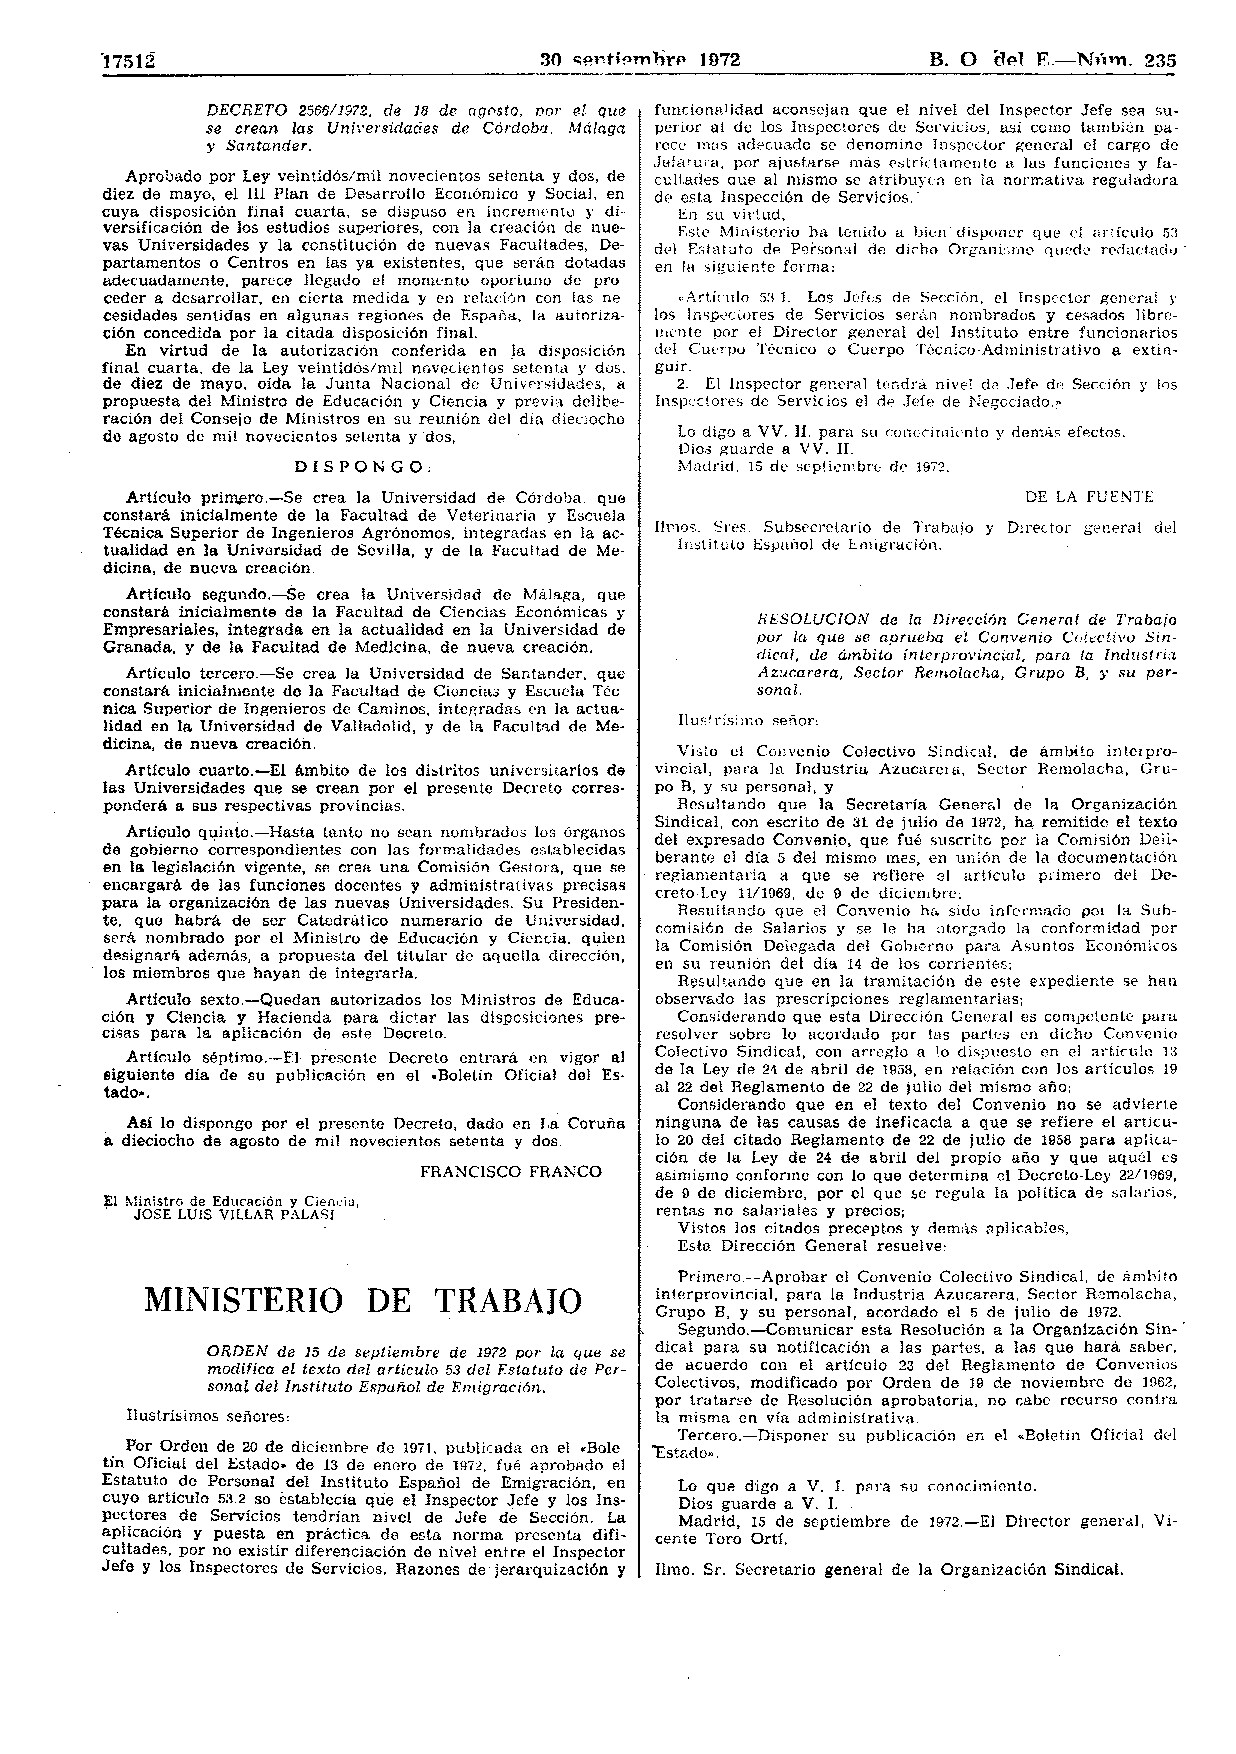 BOE en el que se publica el decreto de creación de la UMA, firmado por Franco.